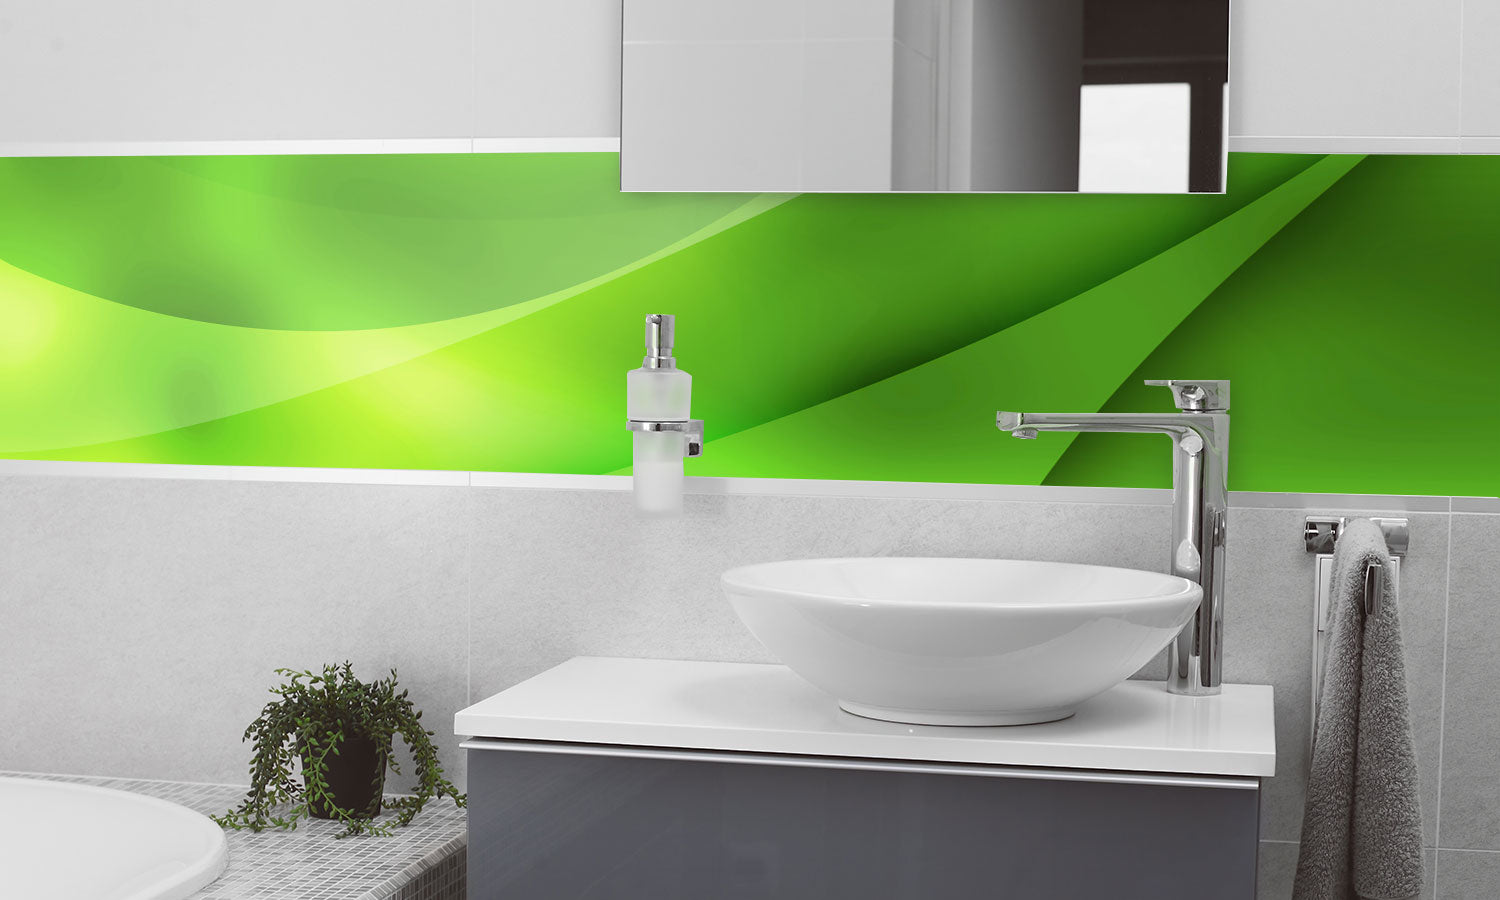 Kuhinjski paneli Abstract Green Composition - Stekleni / PVC plošče / Pleksi steklo - s tiskom za kuhinjo, Stenske obloge PKU0131 - Life-decor.si